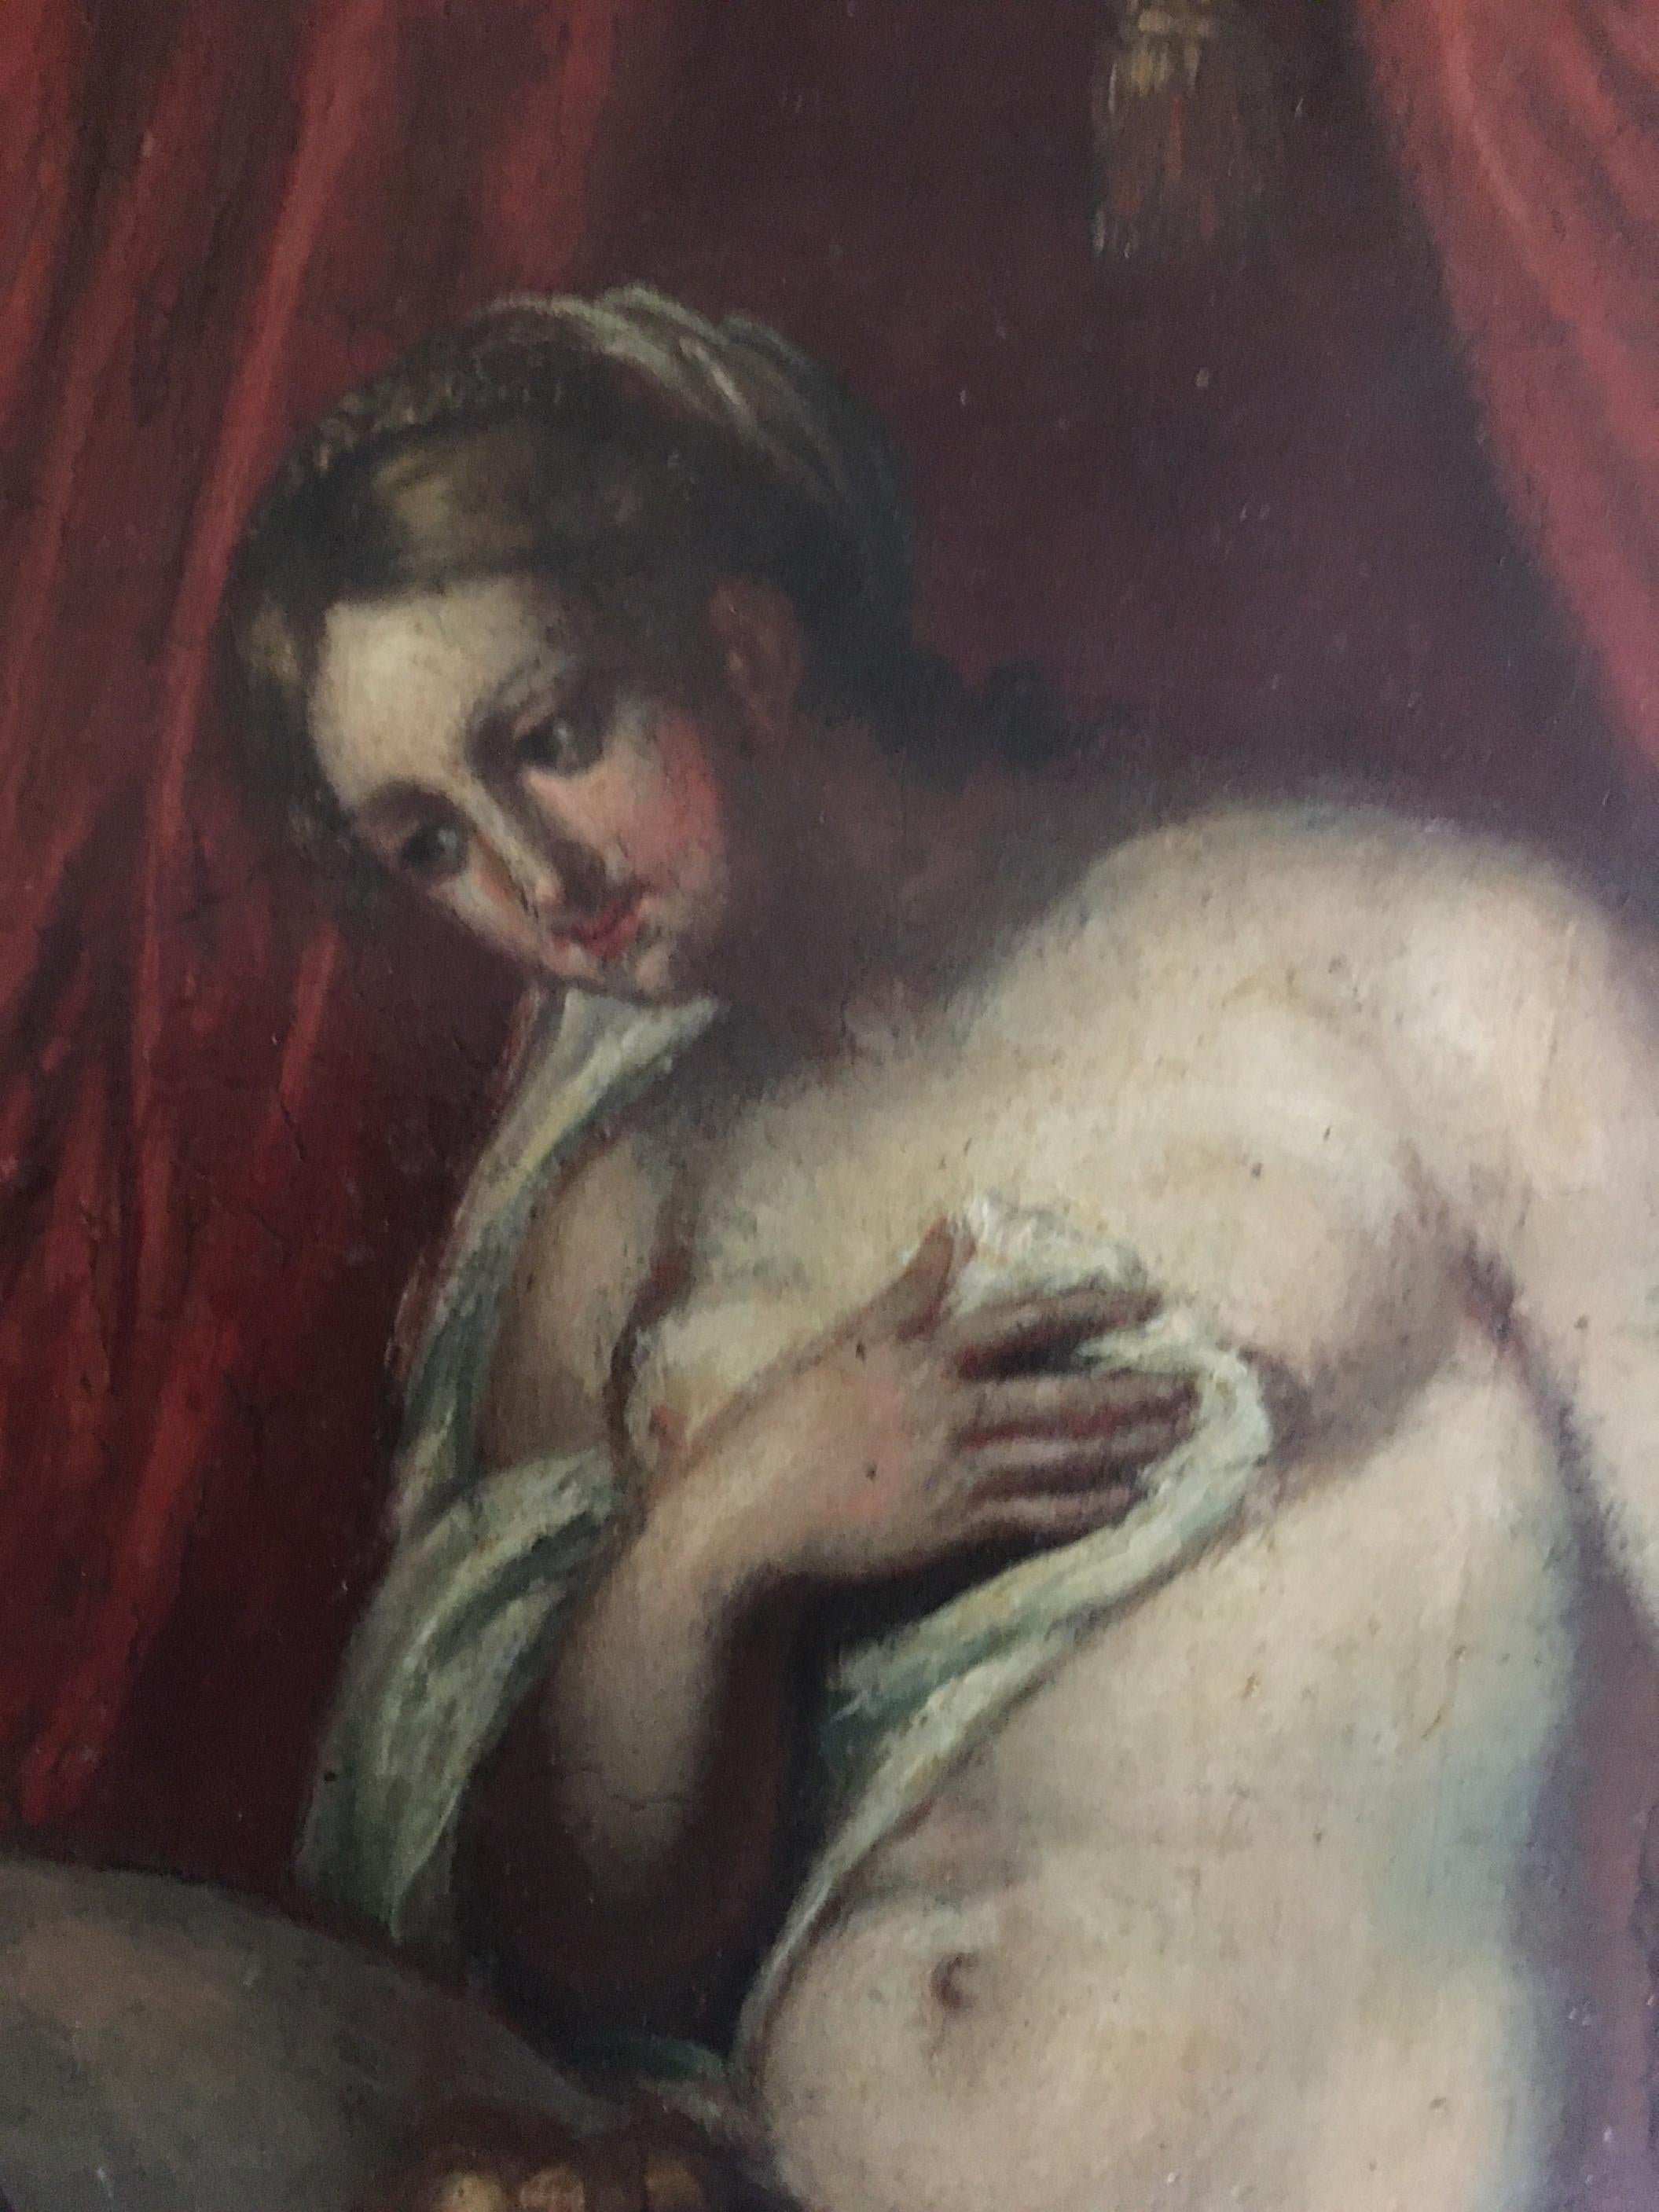 Wood 17th Century Flemish Painting, School of Rubens, Venus Mars and Cupid